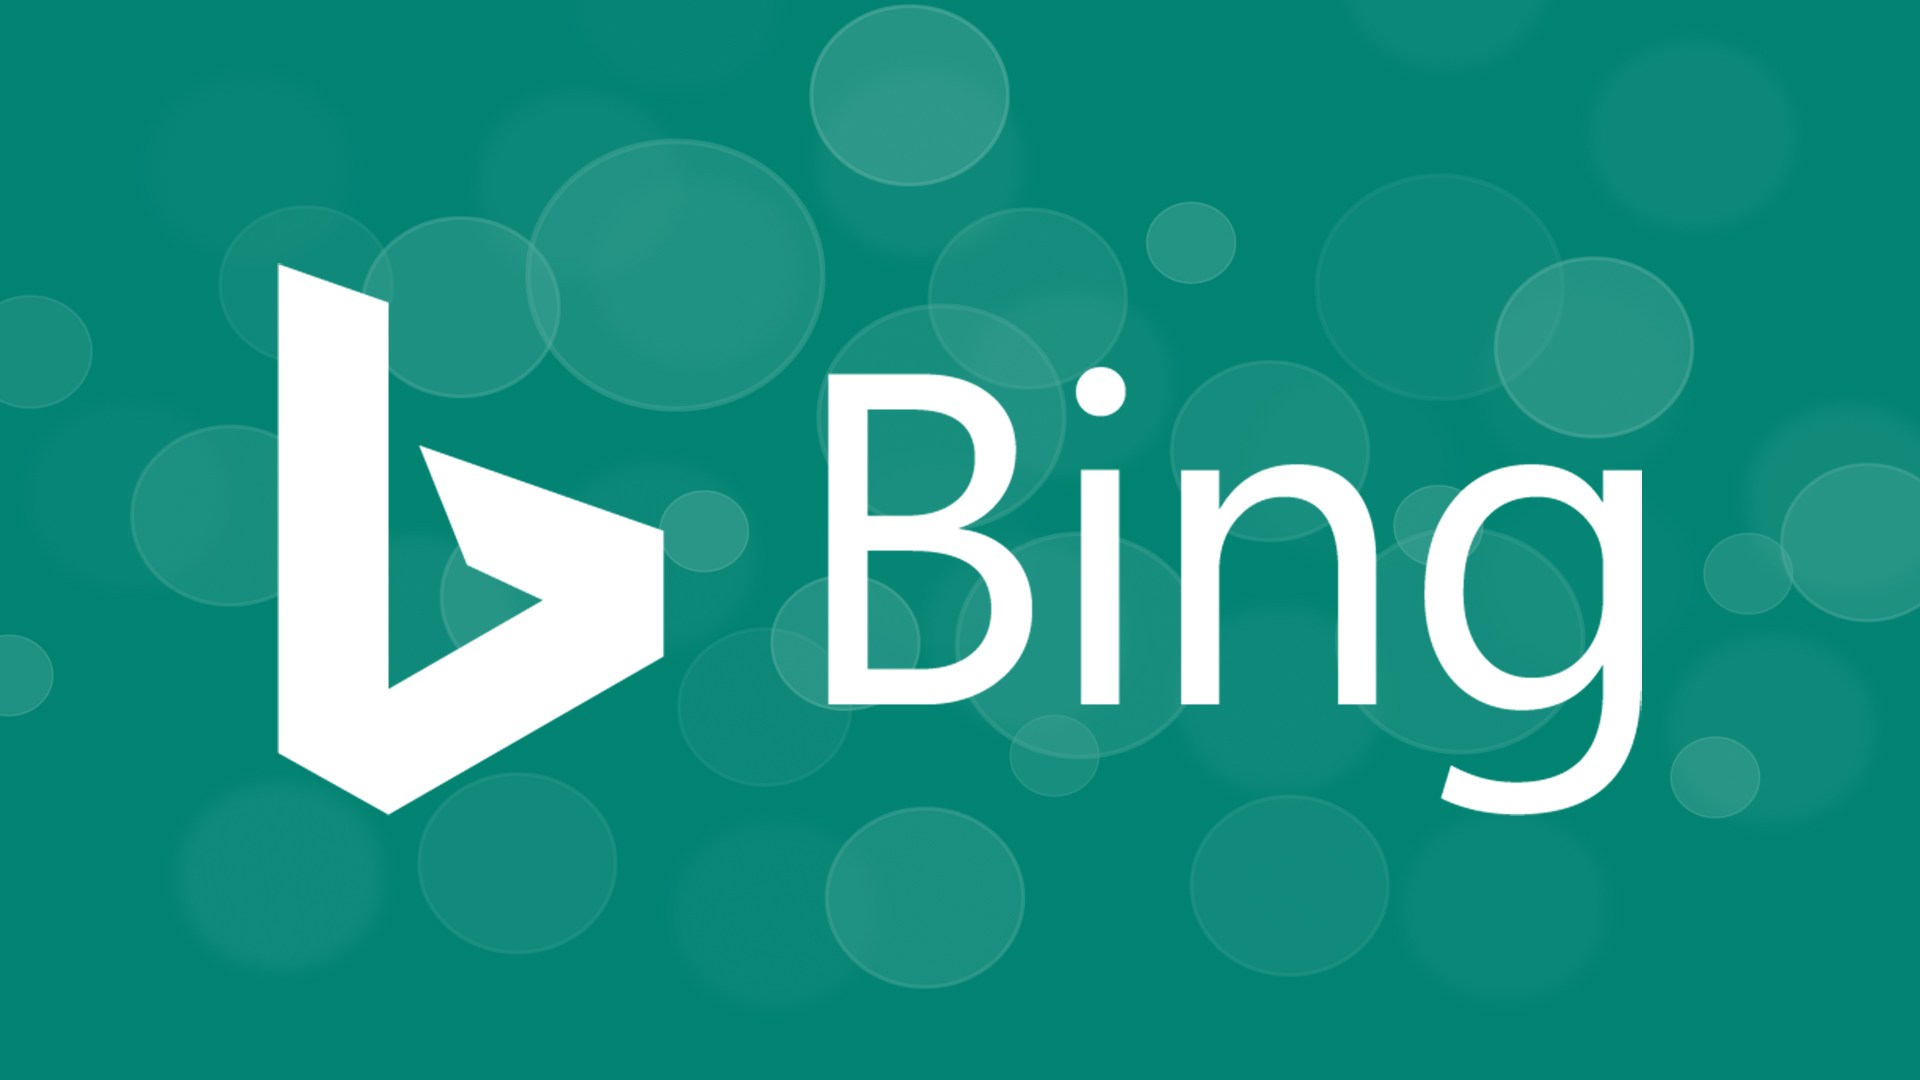 El buscador Bing, de nuevo en problemas por las políticas de seguridad en su contenido. (Foto Prensa Libre: Bing)